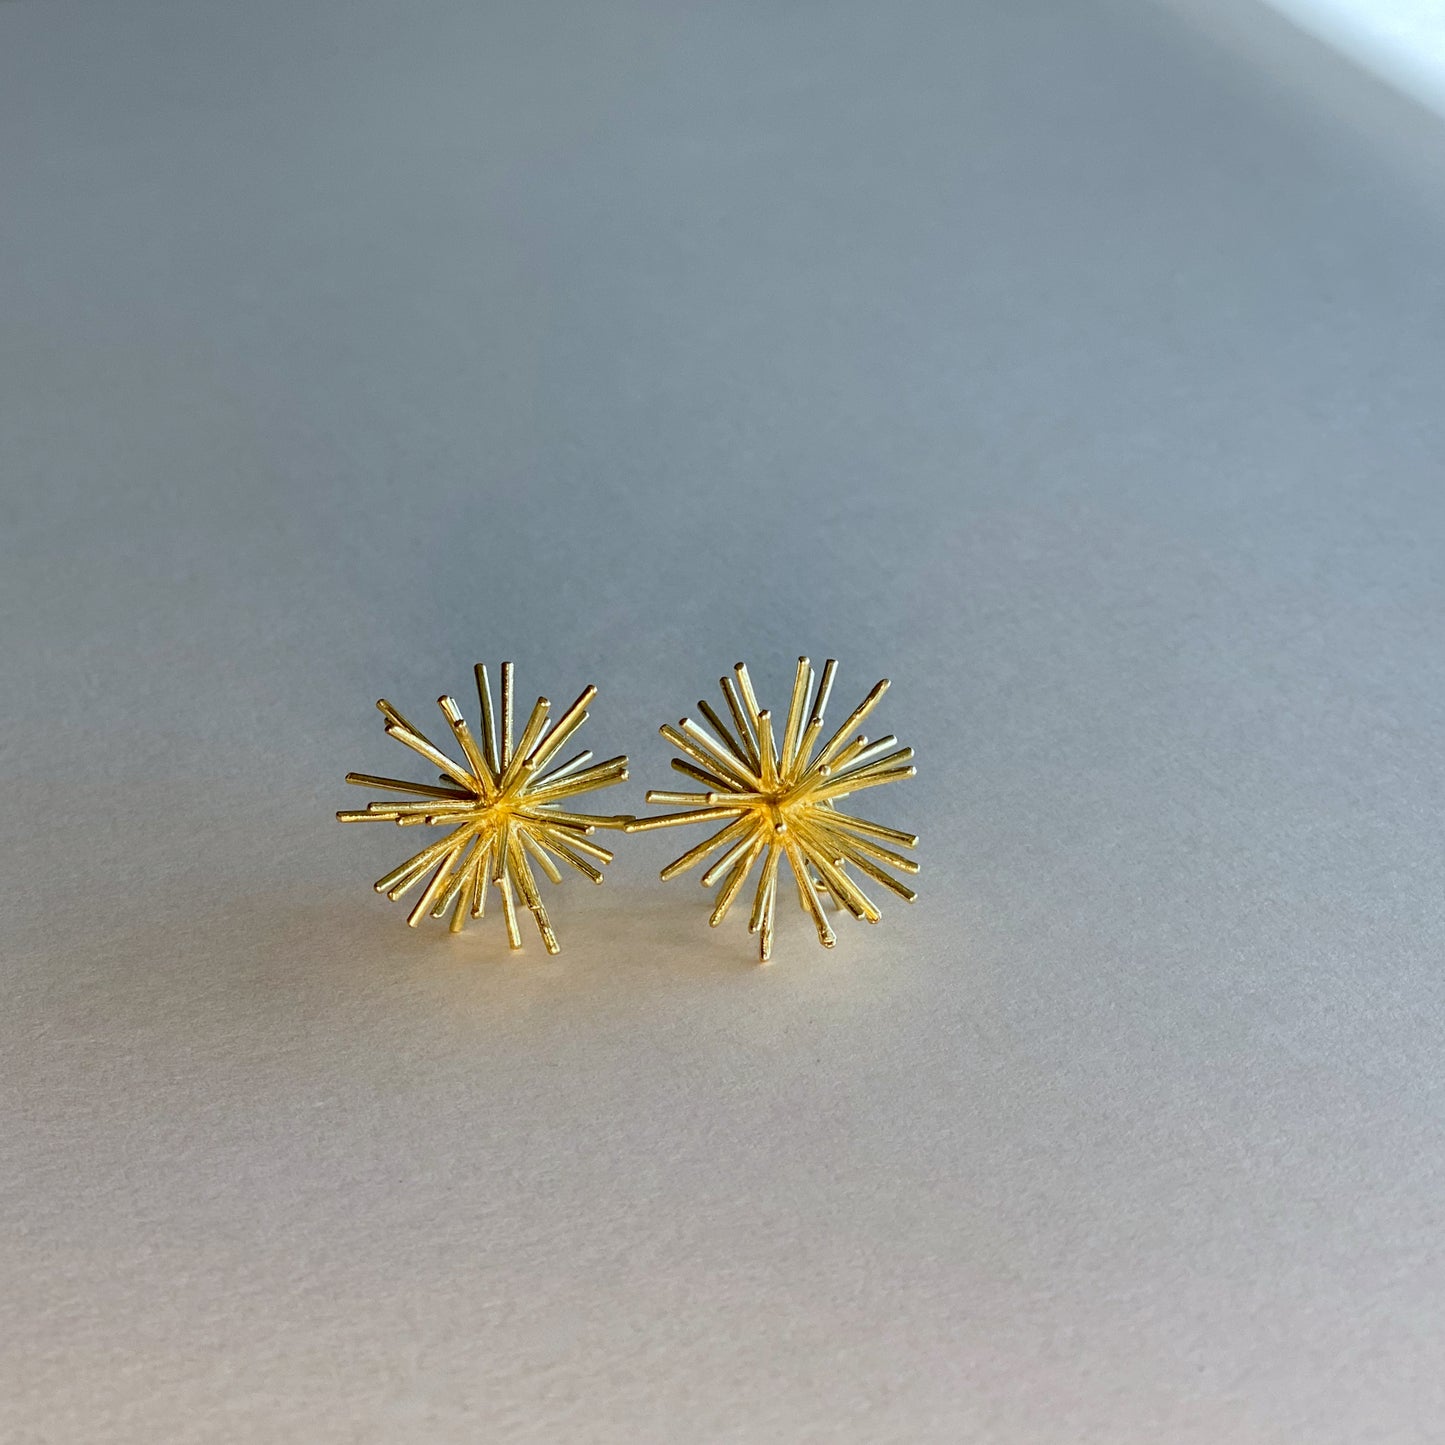 Large Sea Urchin, earring.